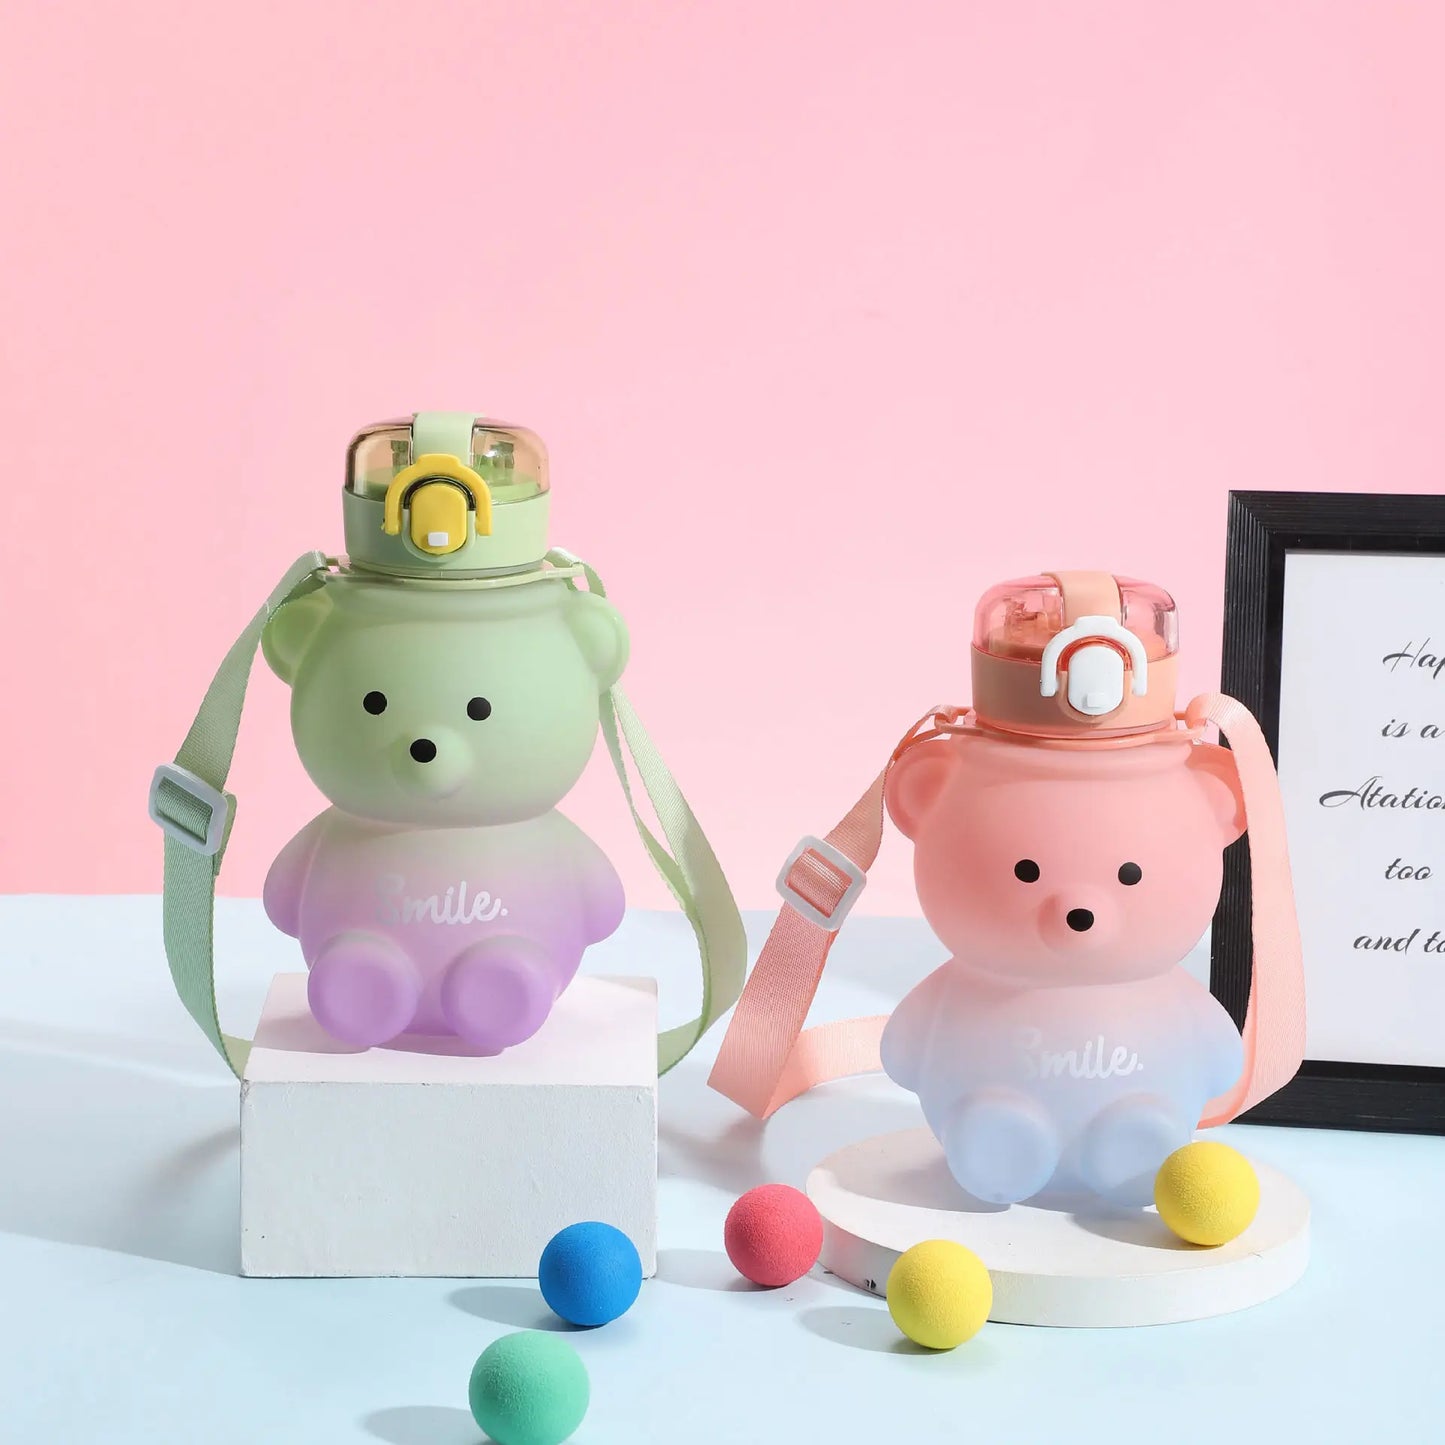 Zwei Teddybaer-Trinkflaschen, eine gruen und die andere rosa, mit der Aufschrift "Smile", stehen neben einander vor einem rosa Hintergrund. Beide haben Tragegurte und sind umgeben von bunten Baellen.